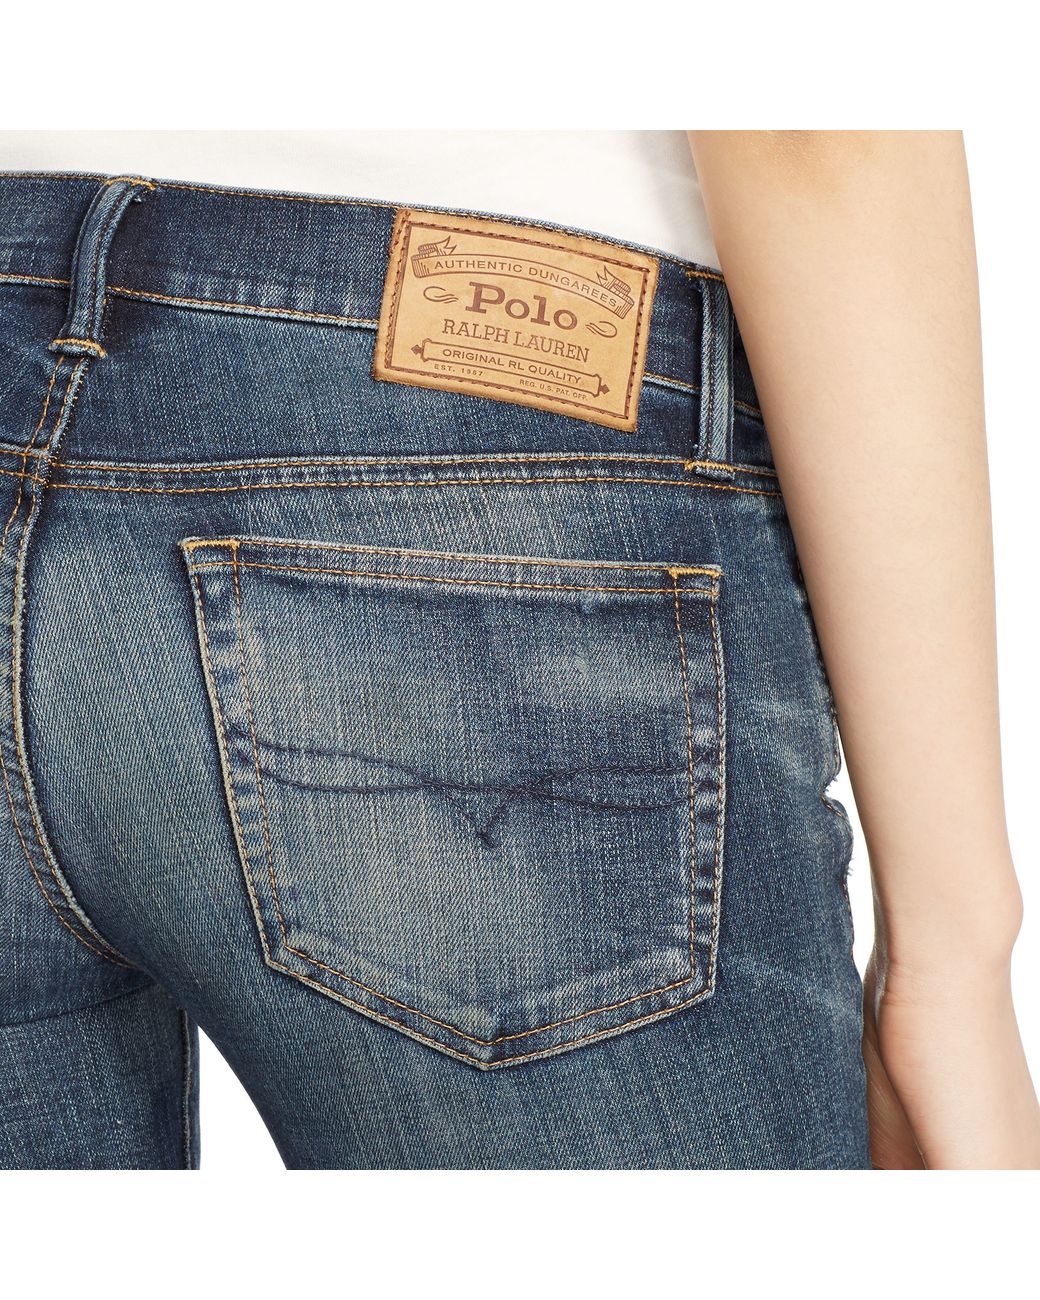 Polo Ralph Lauren Tompkins Skinny Jean in Blue | Lyst UK